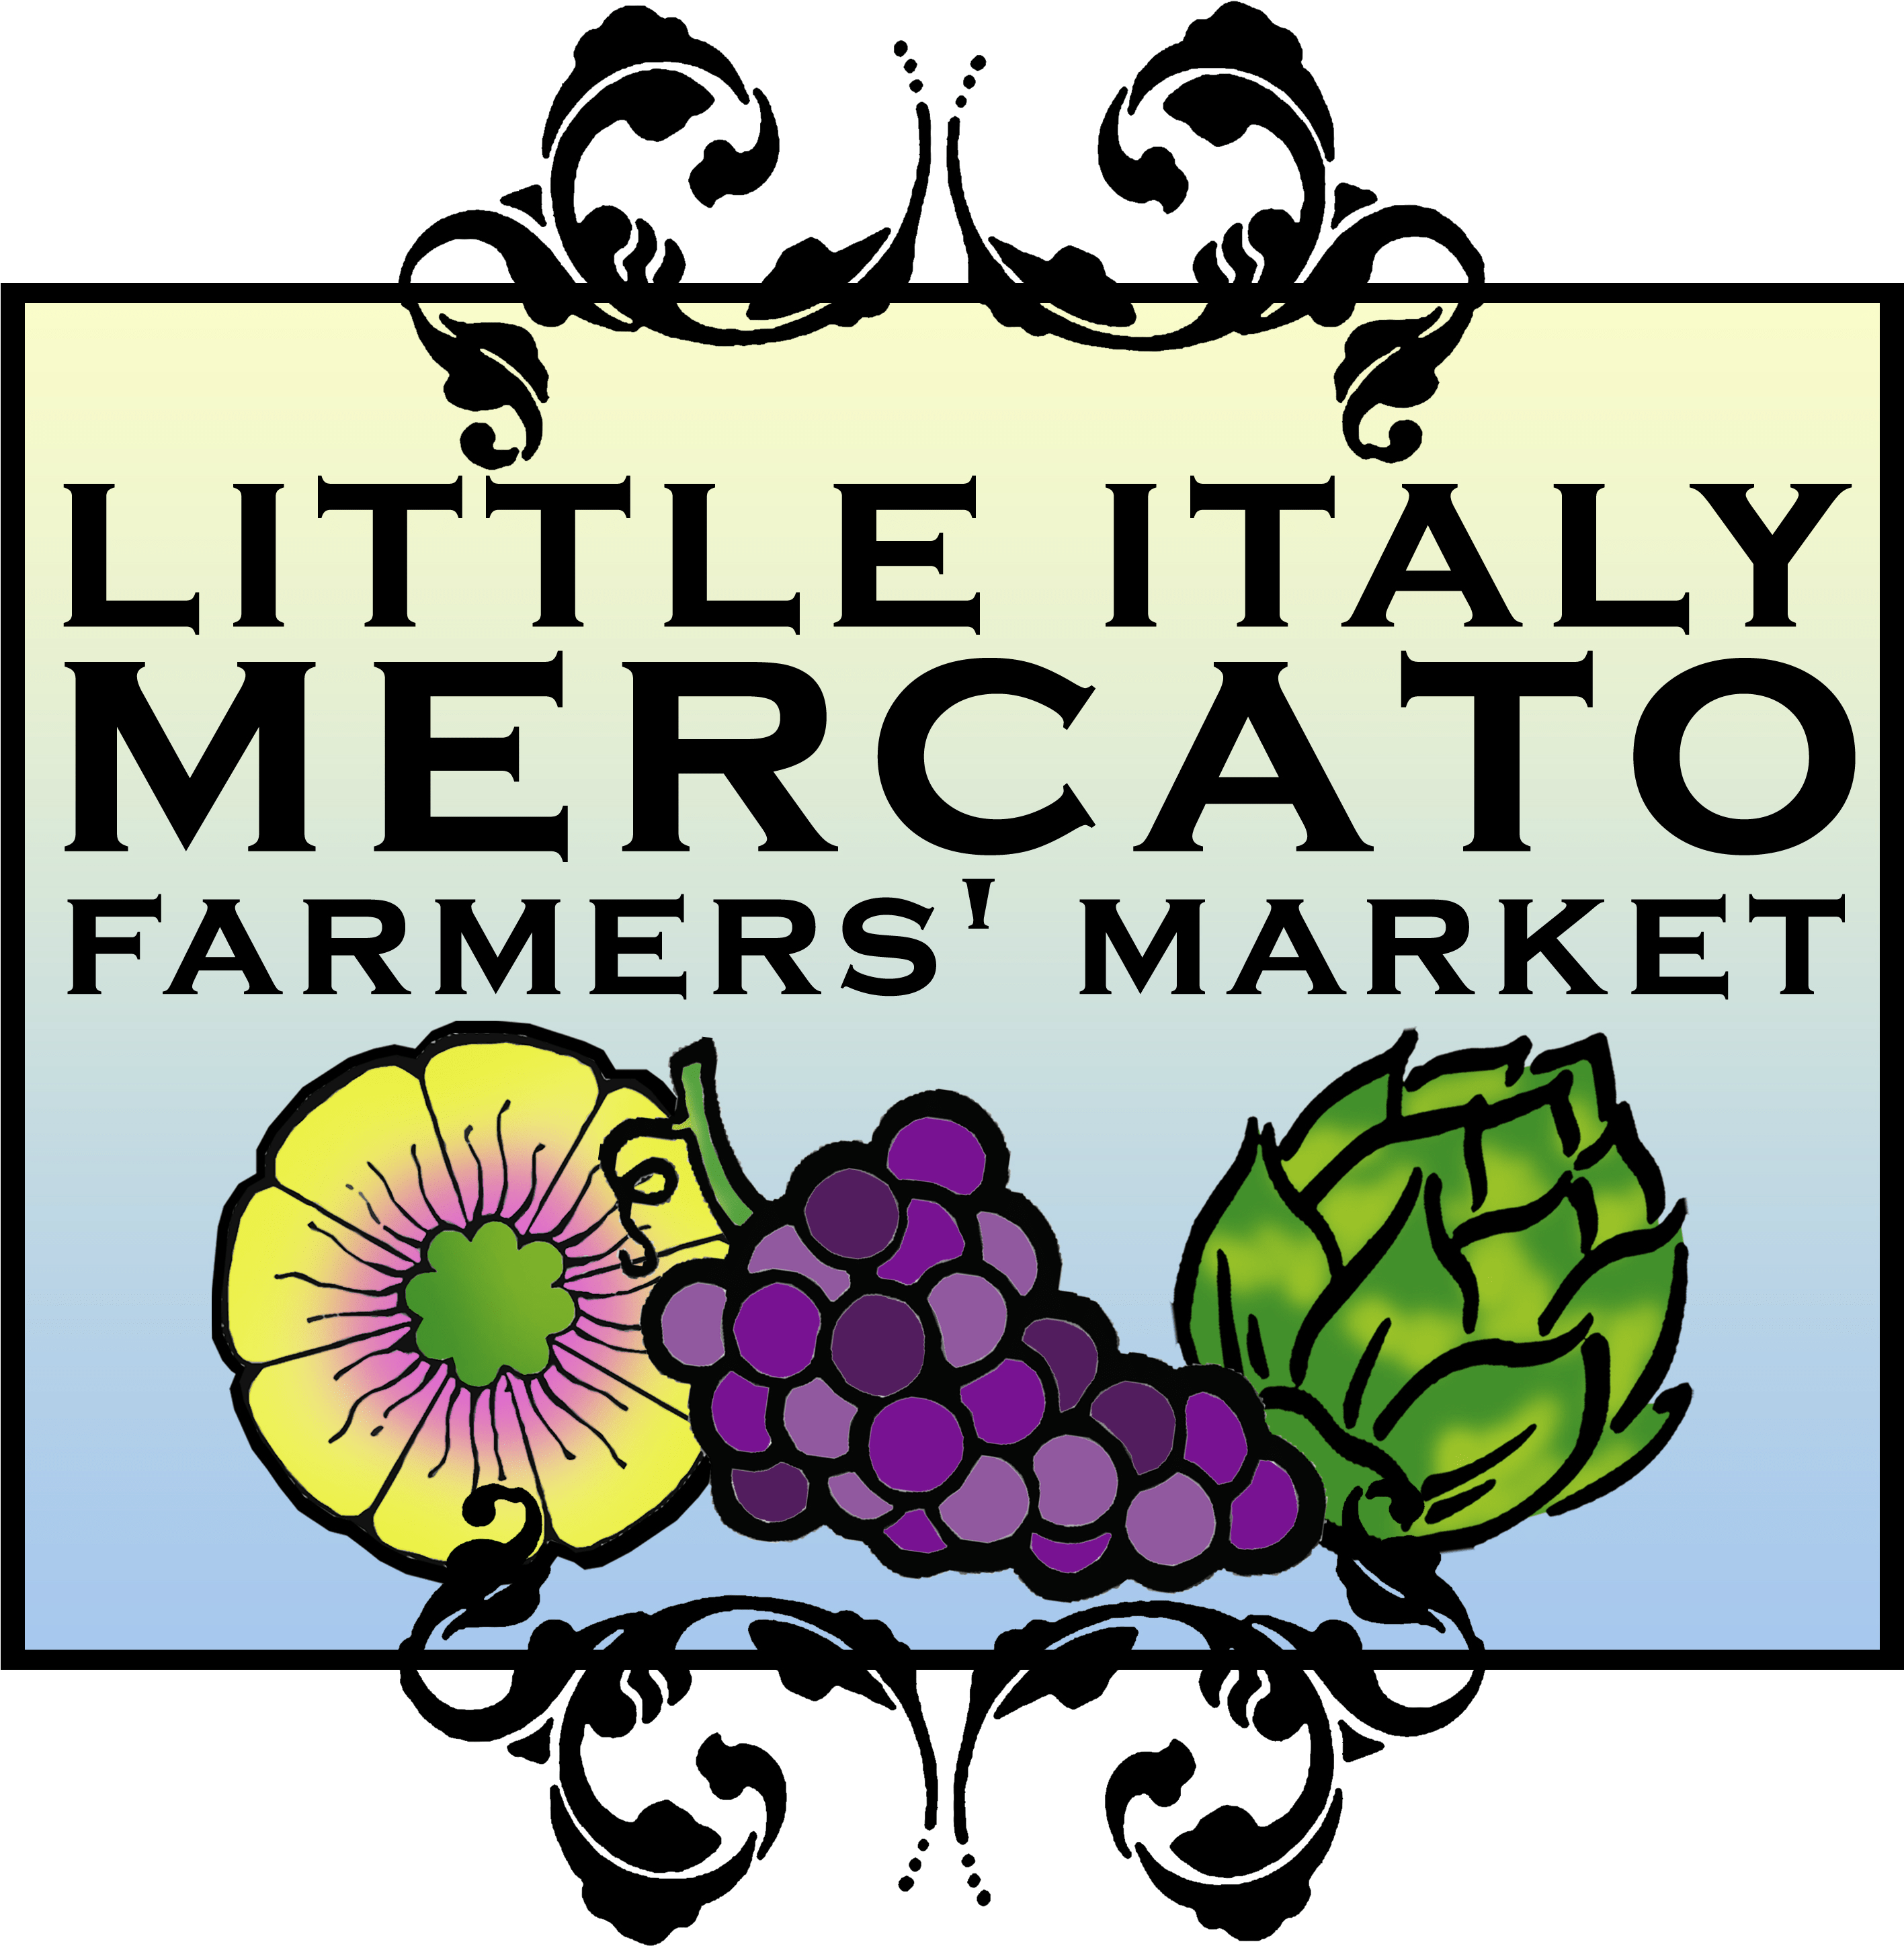 Little Italy Mercato Farmers' Market - Little Italy Mercato Farmers' Market (3000x3000)